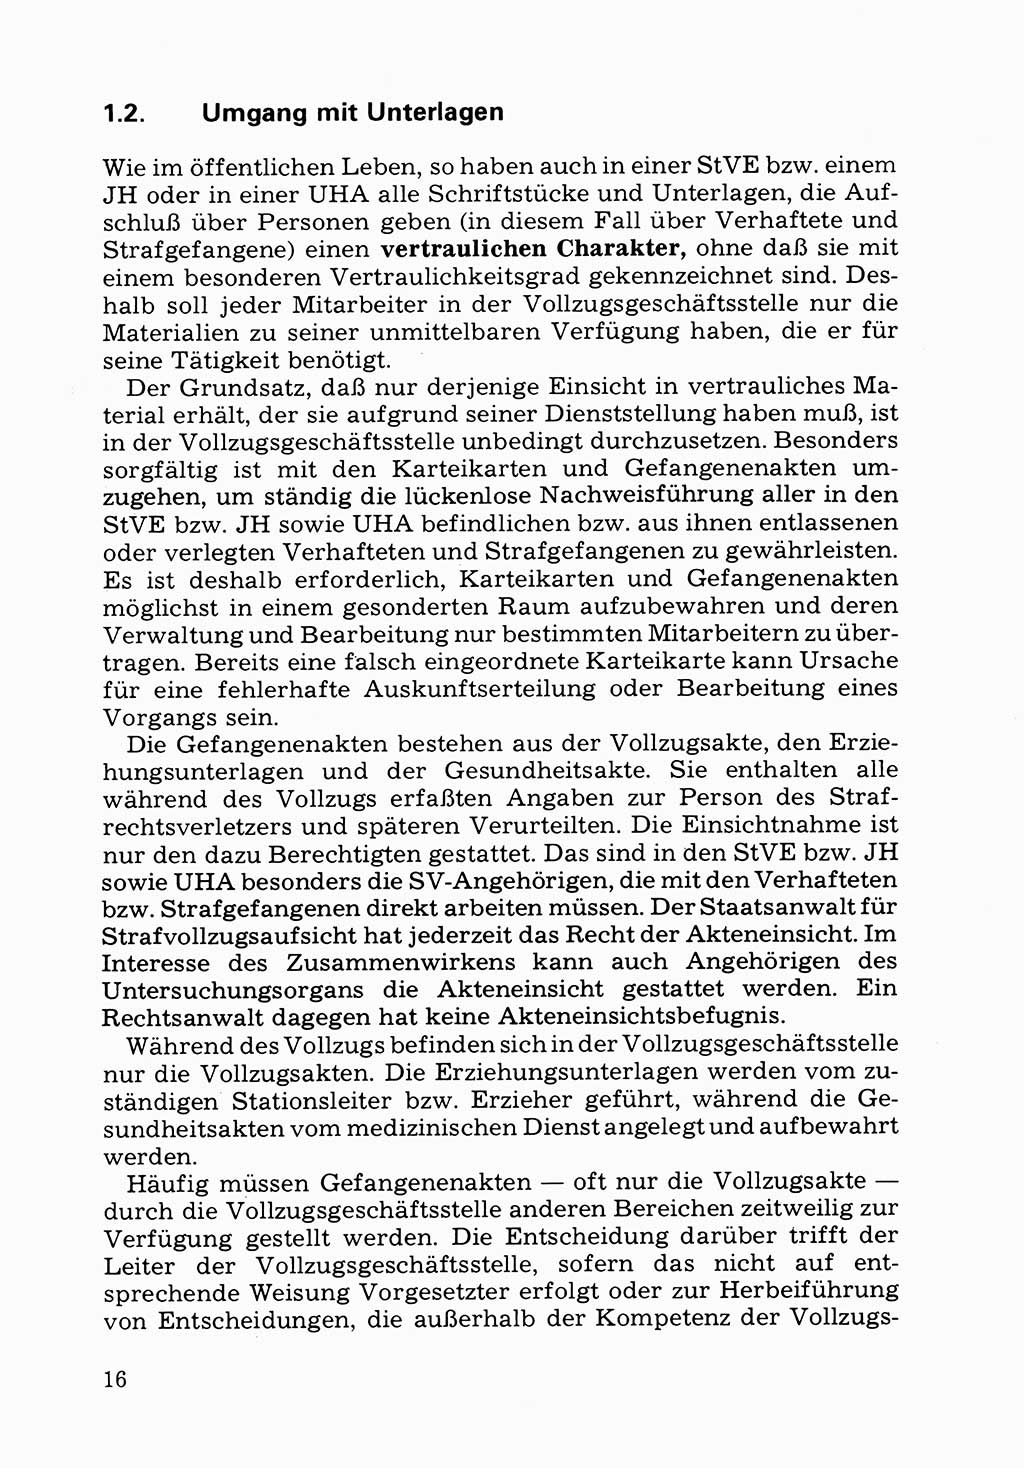 Verwaltungsmäßige Aufgaben beim Vollzug der Untersuchungshaft (U-Haft) sowie der Strafen mit Freiheitsentzug (SV) [Deutsche Demokratische Republik (DDR)] 1980, Seite 16 (Aufg. Vollz. U-Haft SV DDR 1980, S. 16)